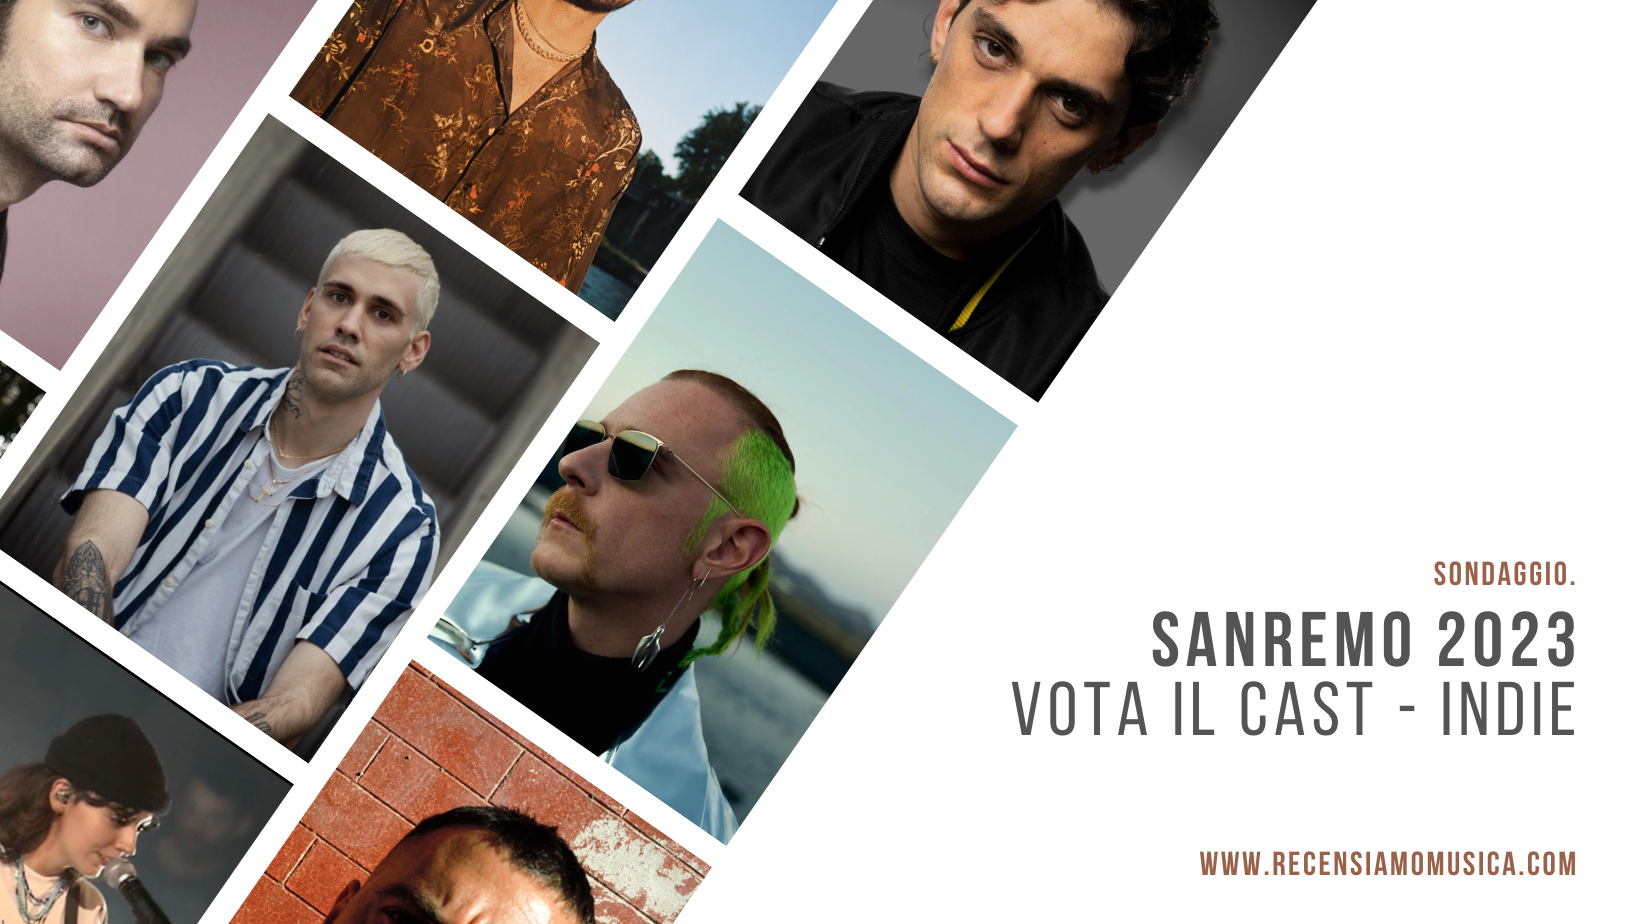 Sanremo 2023 - Indie - Sondaggio cast